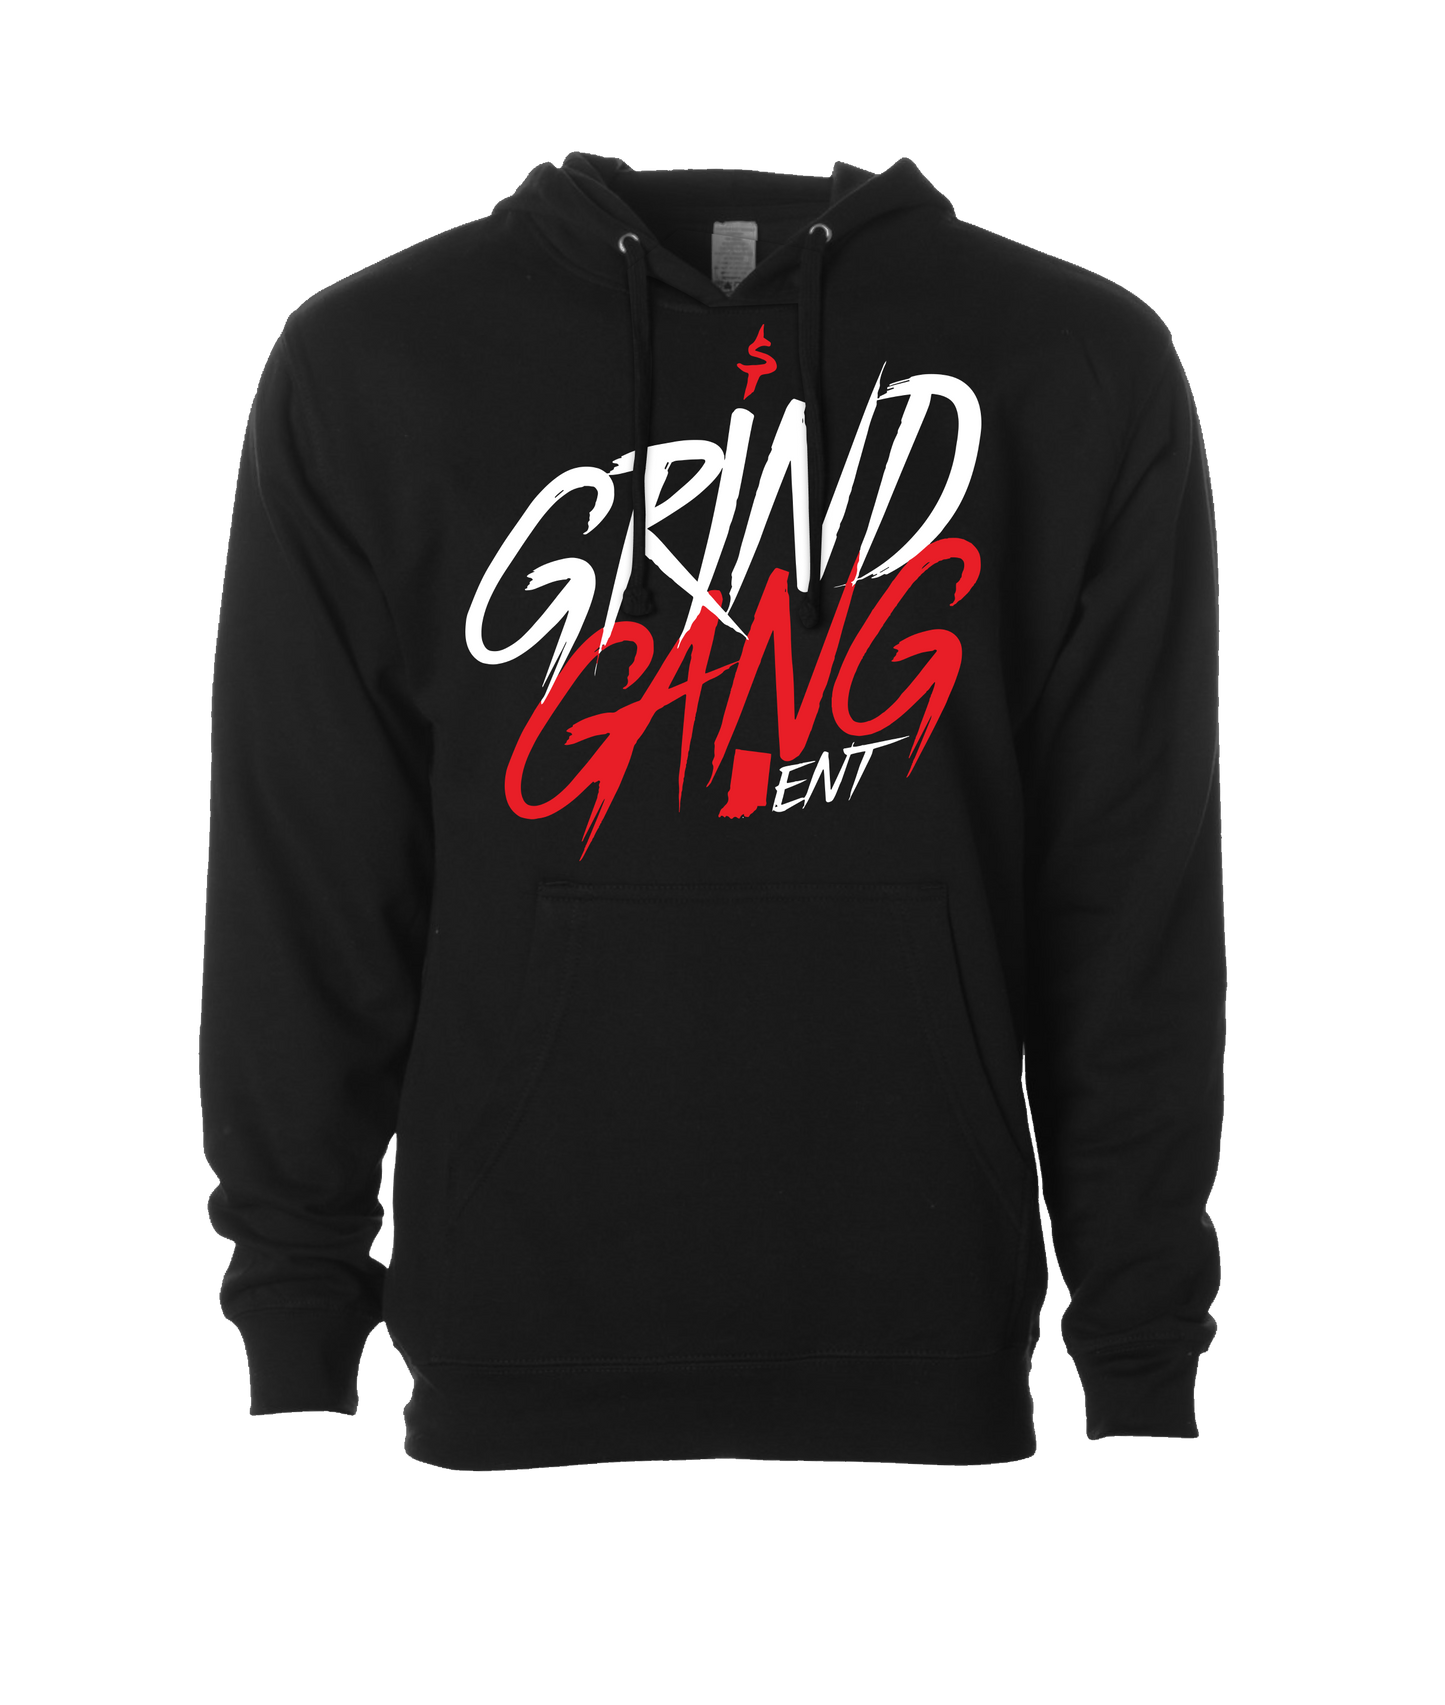 GRIND GANG ENT. LLC - INDIANA GRIND 1 - Black Hoodie